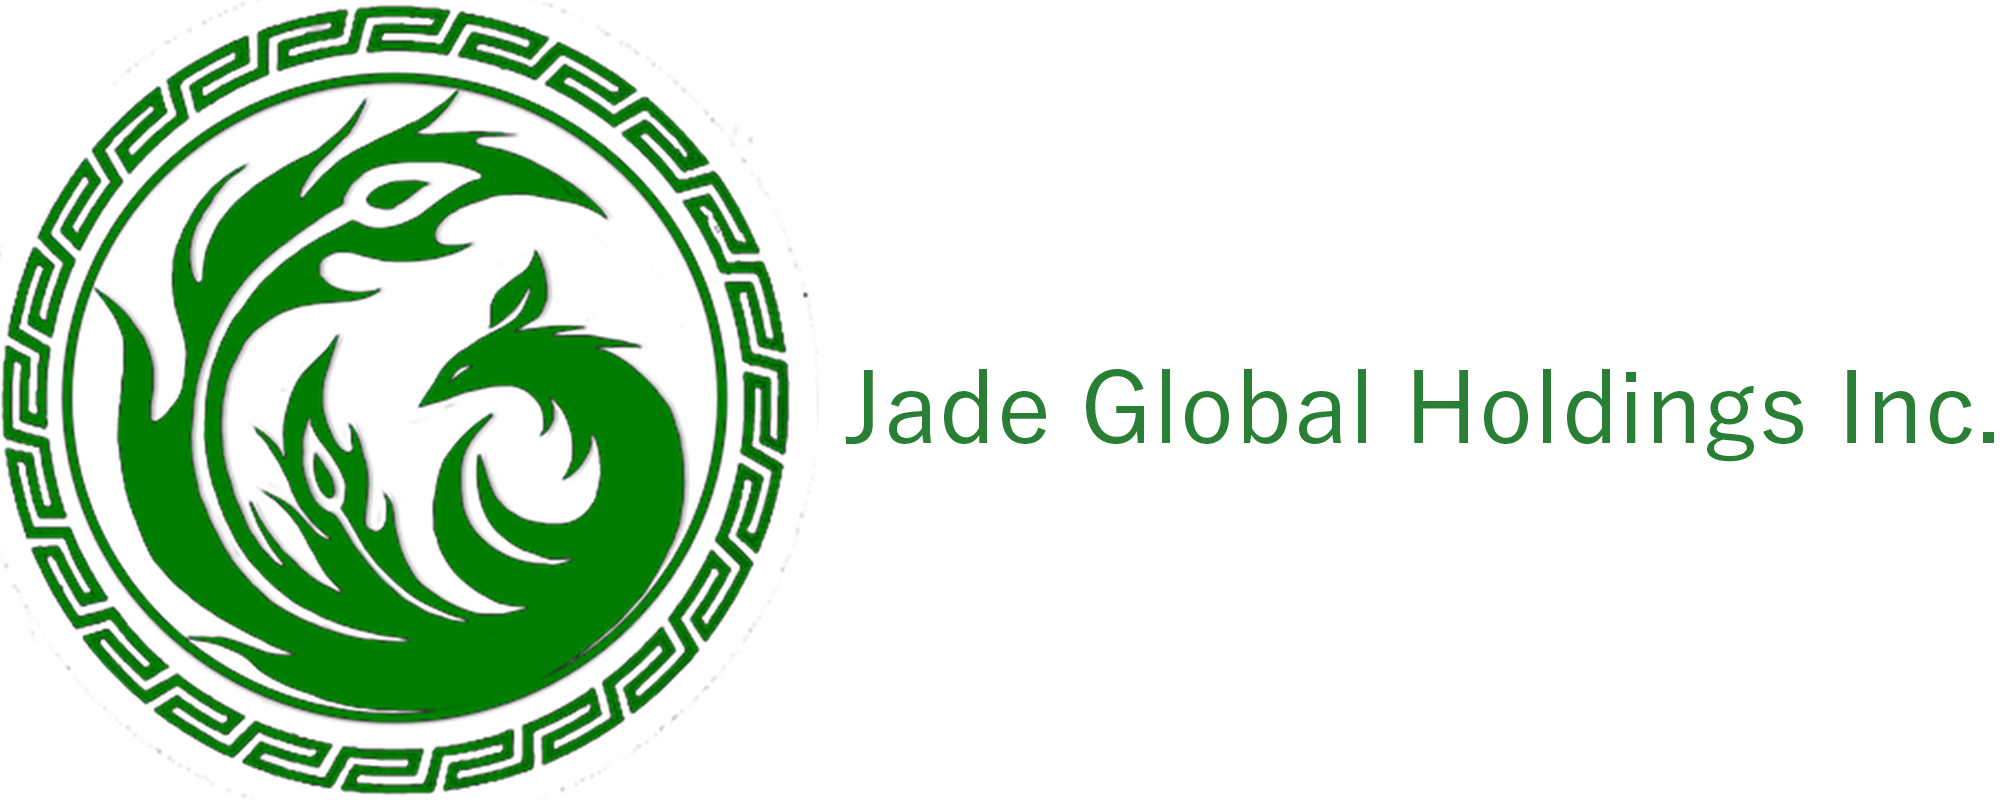 Jade Global Holdings